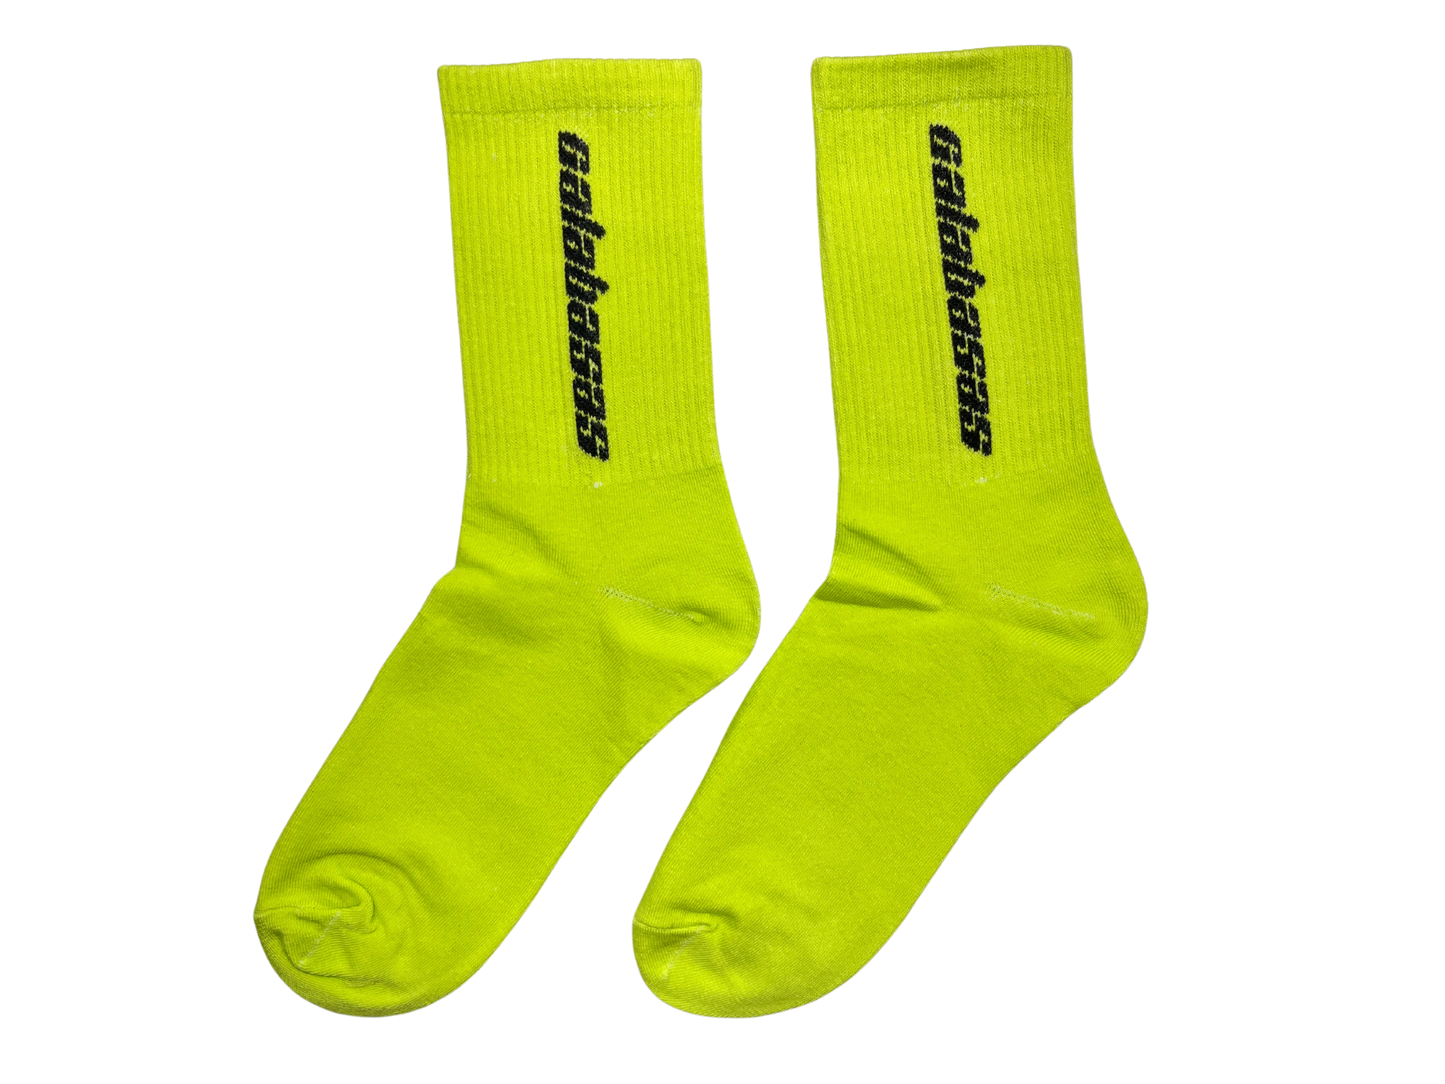 Yeezy CALABASAS Fluorescent Green Crew Socks